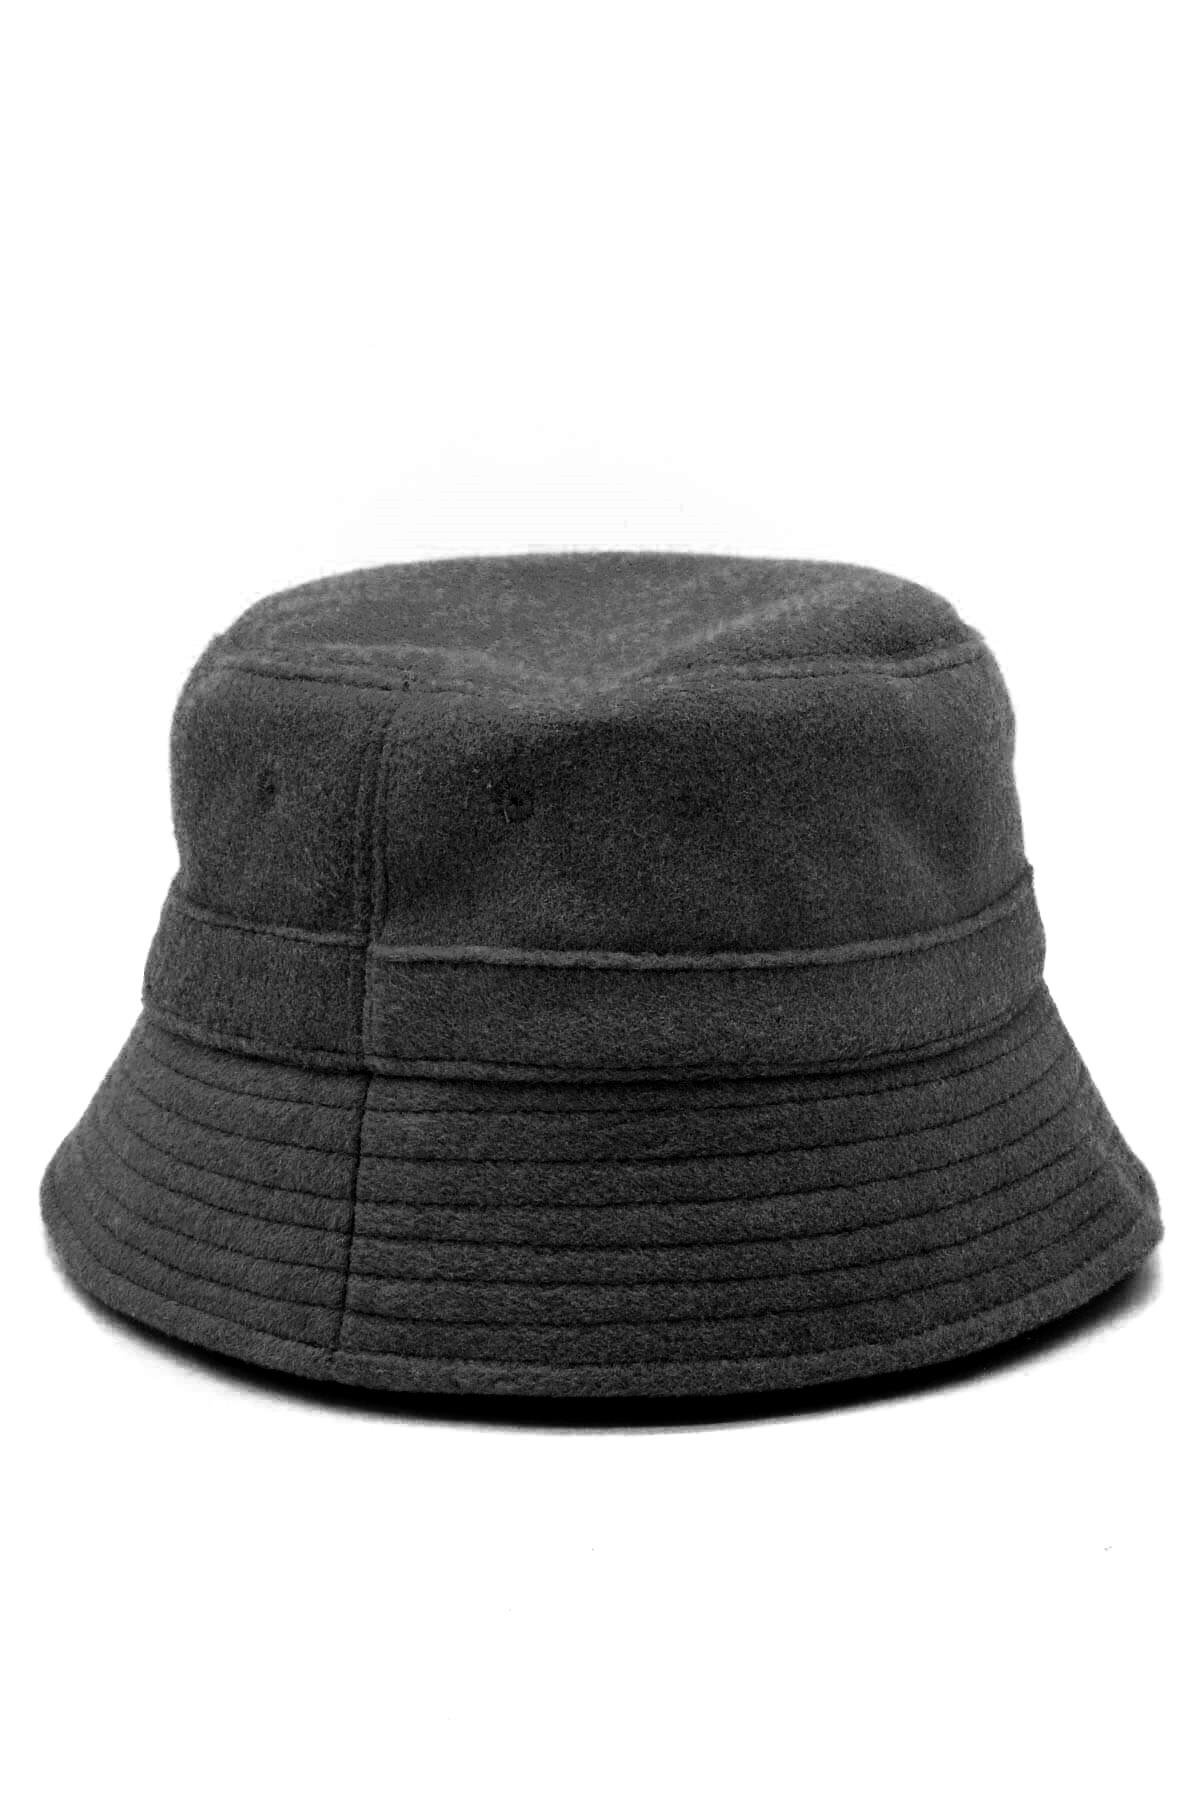 Külah Kadın Yün Siyah Kışlık Balıkçı Bucket Şapka KLH7054